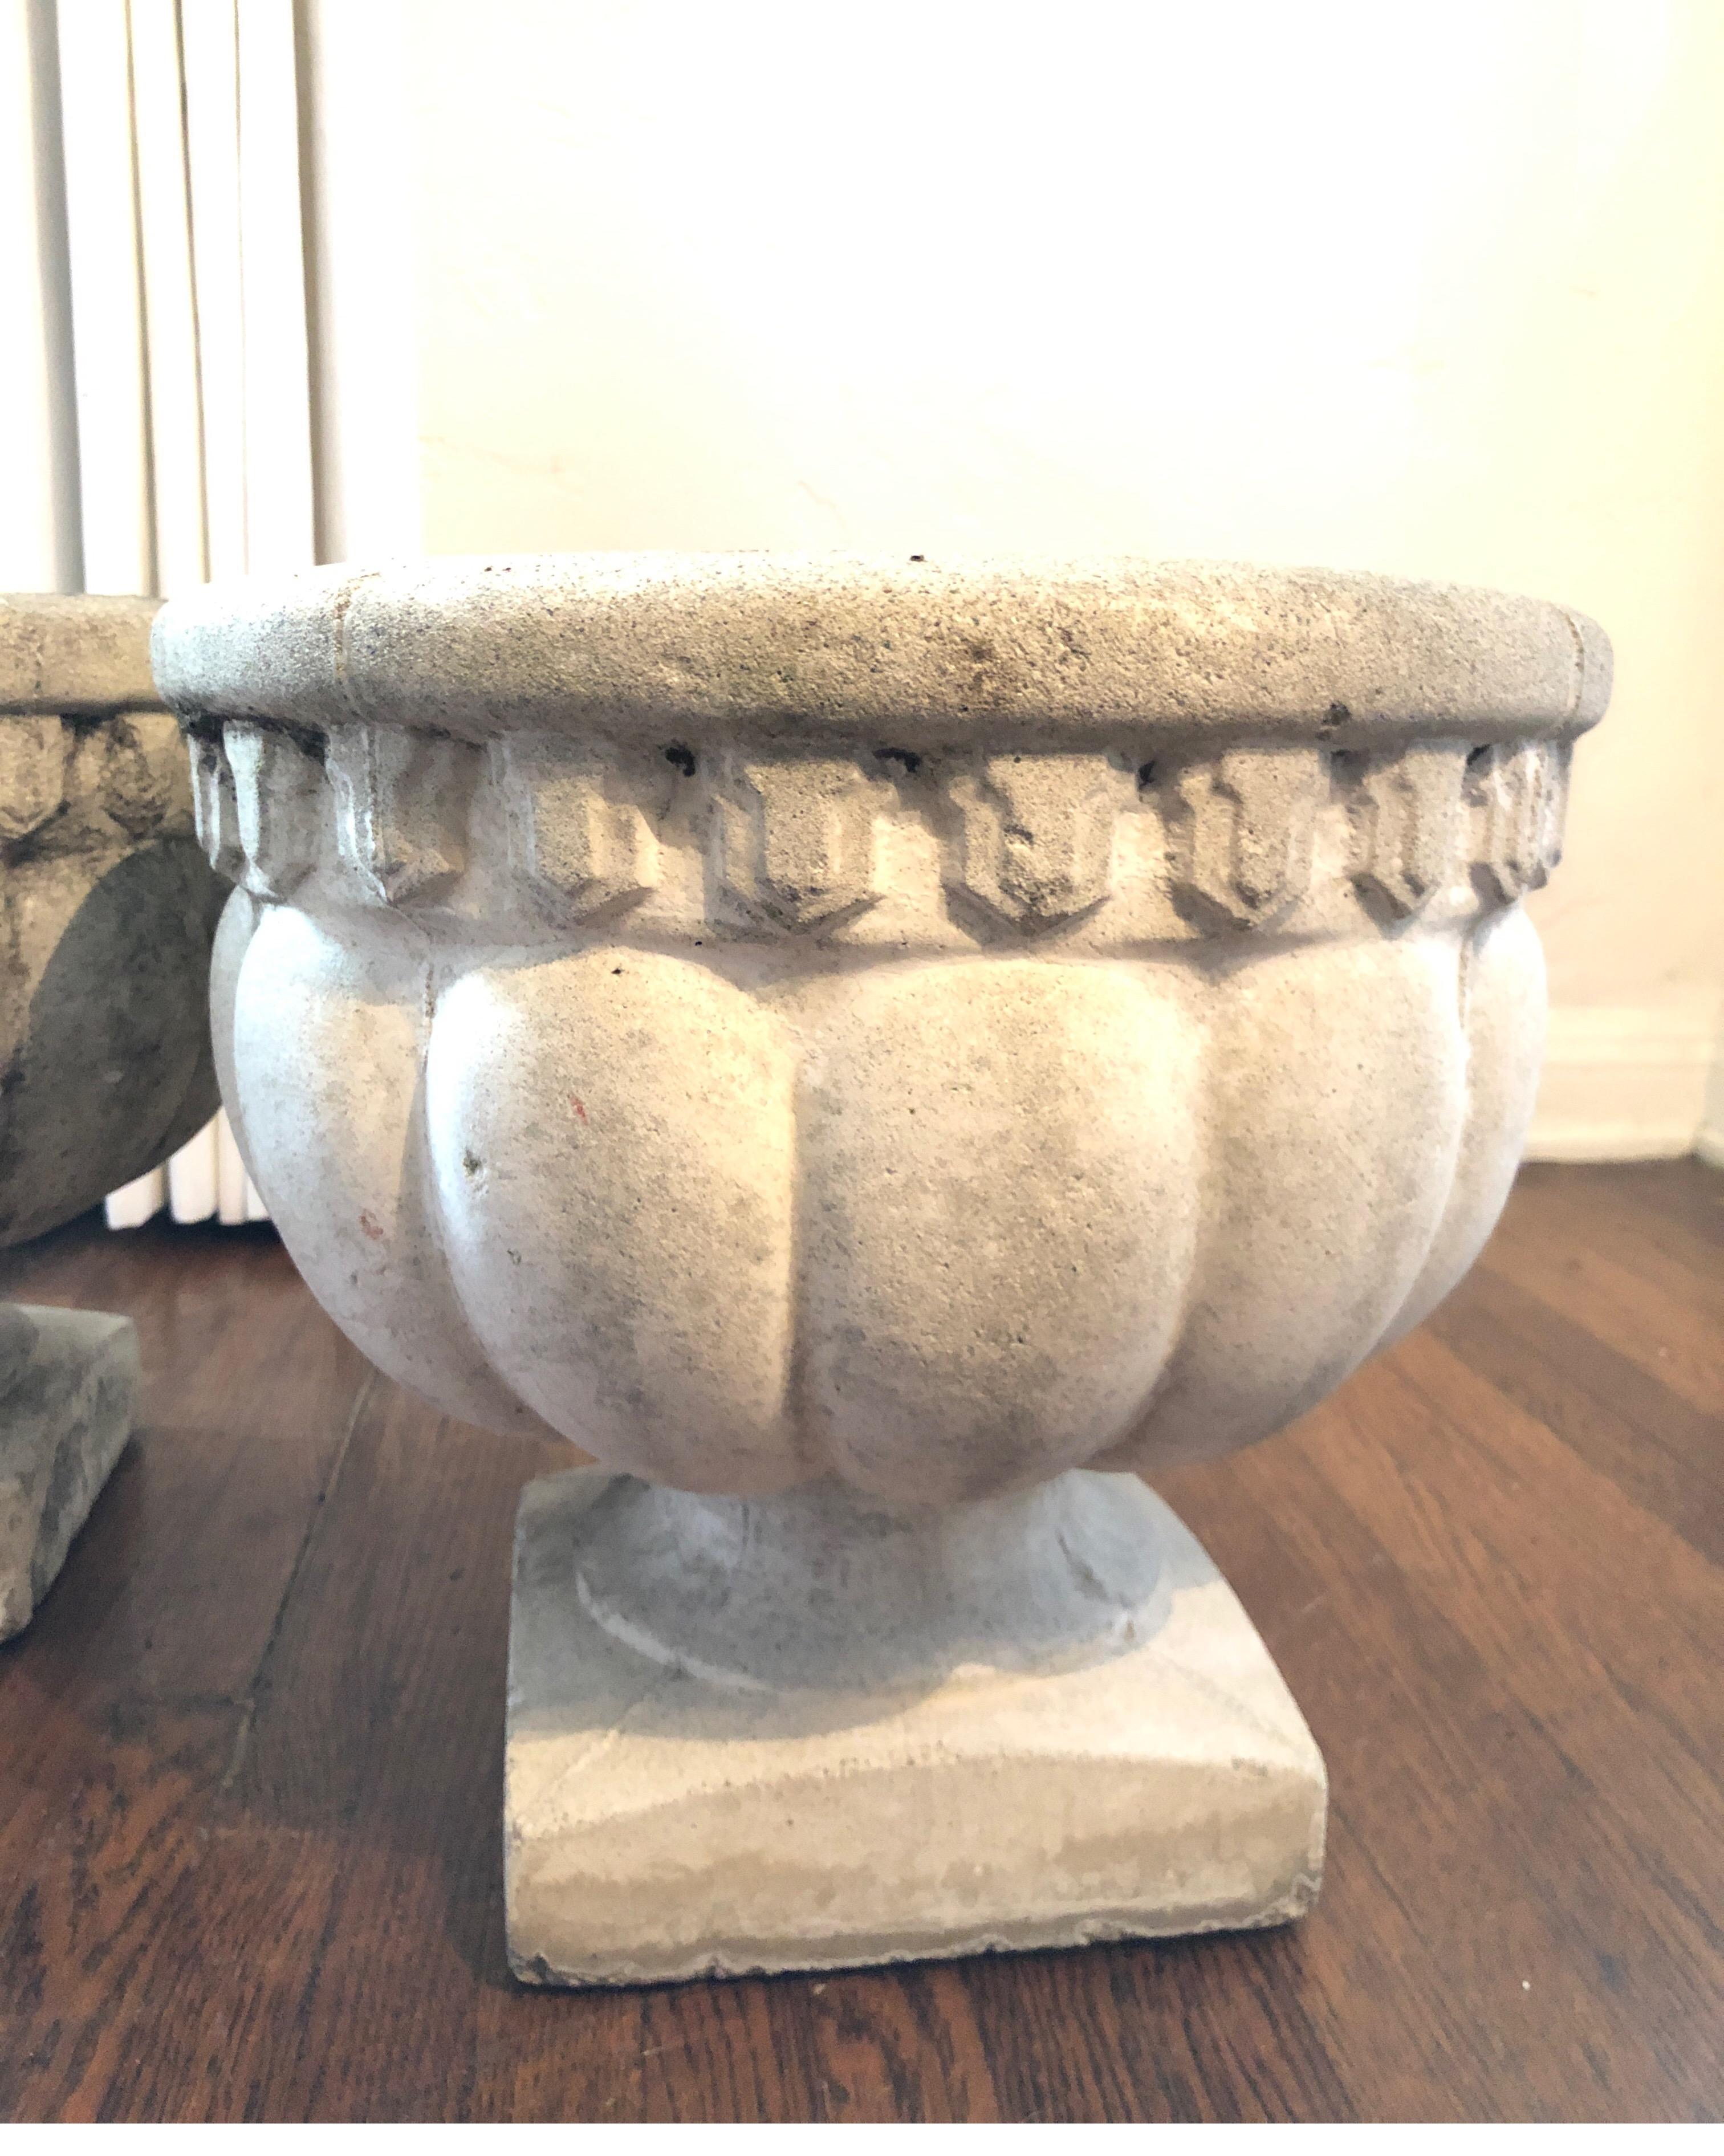 Cette paire de jardinières urnes en pierre moulée française a beaucoup de charme et sera une excellente touche dans n'importe quel espace de votre maison design comme des jardinières en pierre ou des vases d'intérieur. Nous disposons d'un troisième